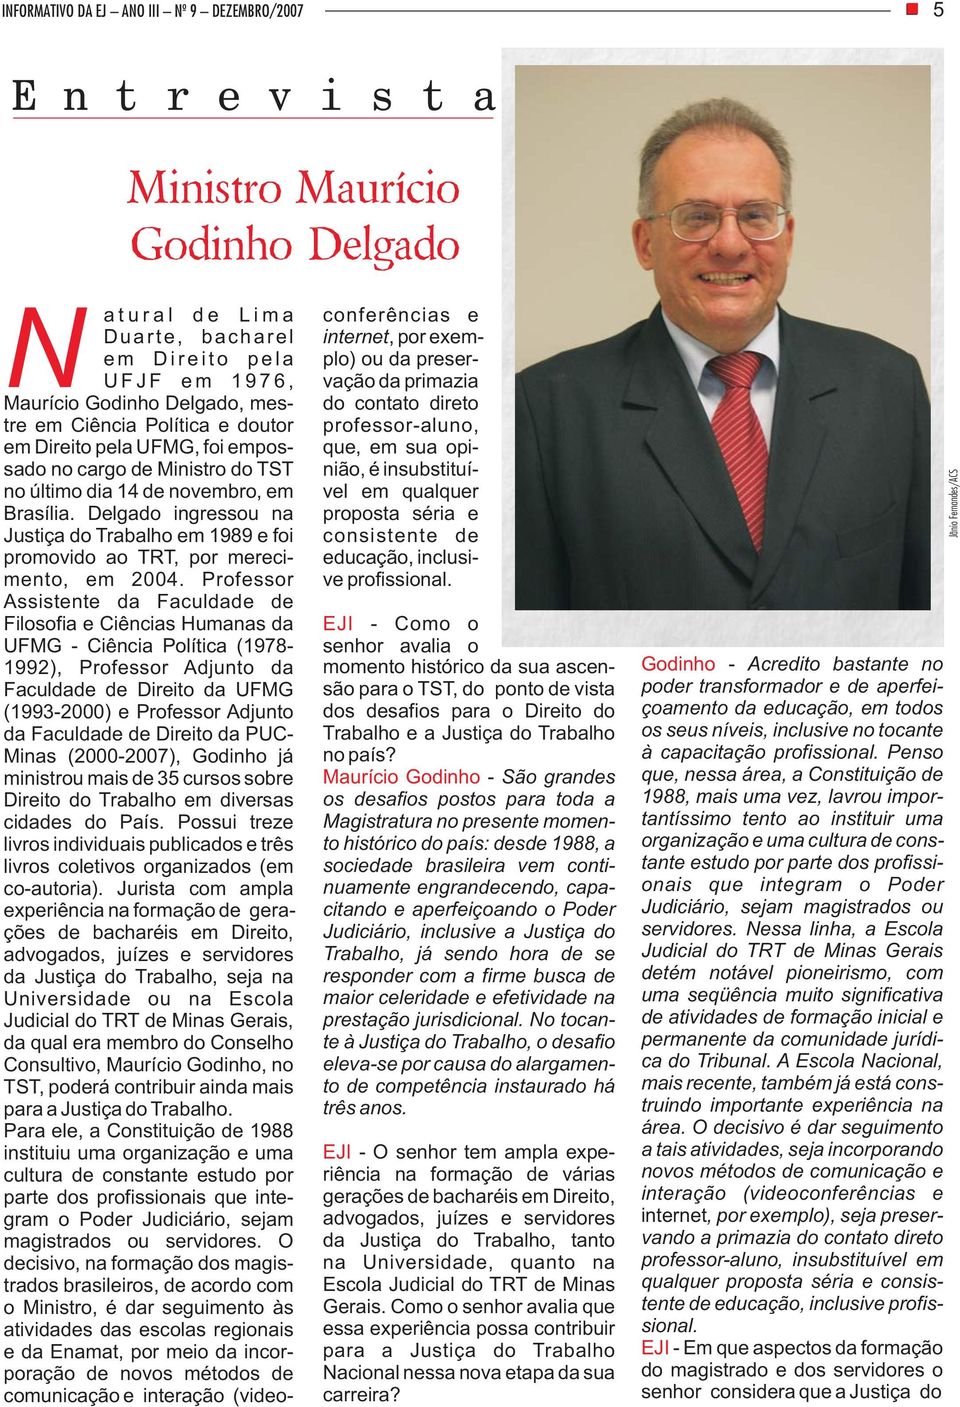 Delgado ingressou na Justiça do Trabalho em 1989 e foi promovido ao TRT, por merecimento, em 2004.